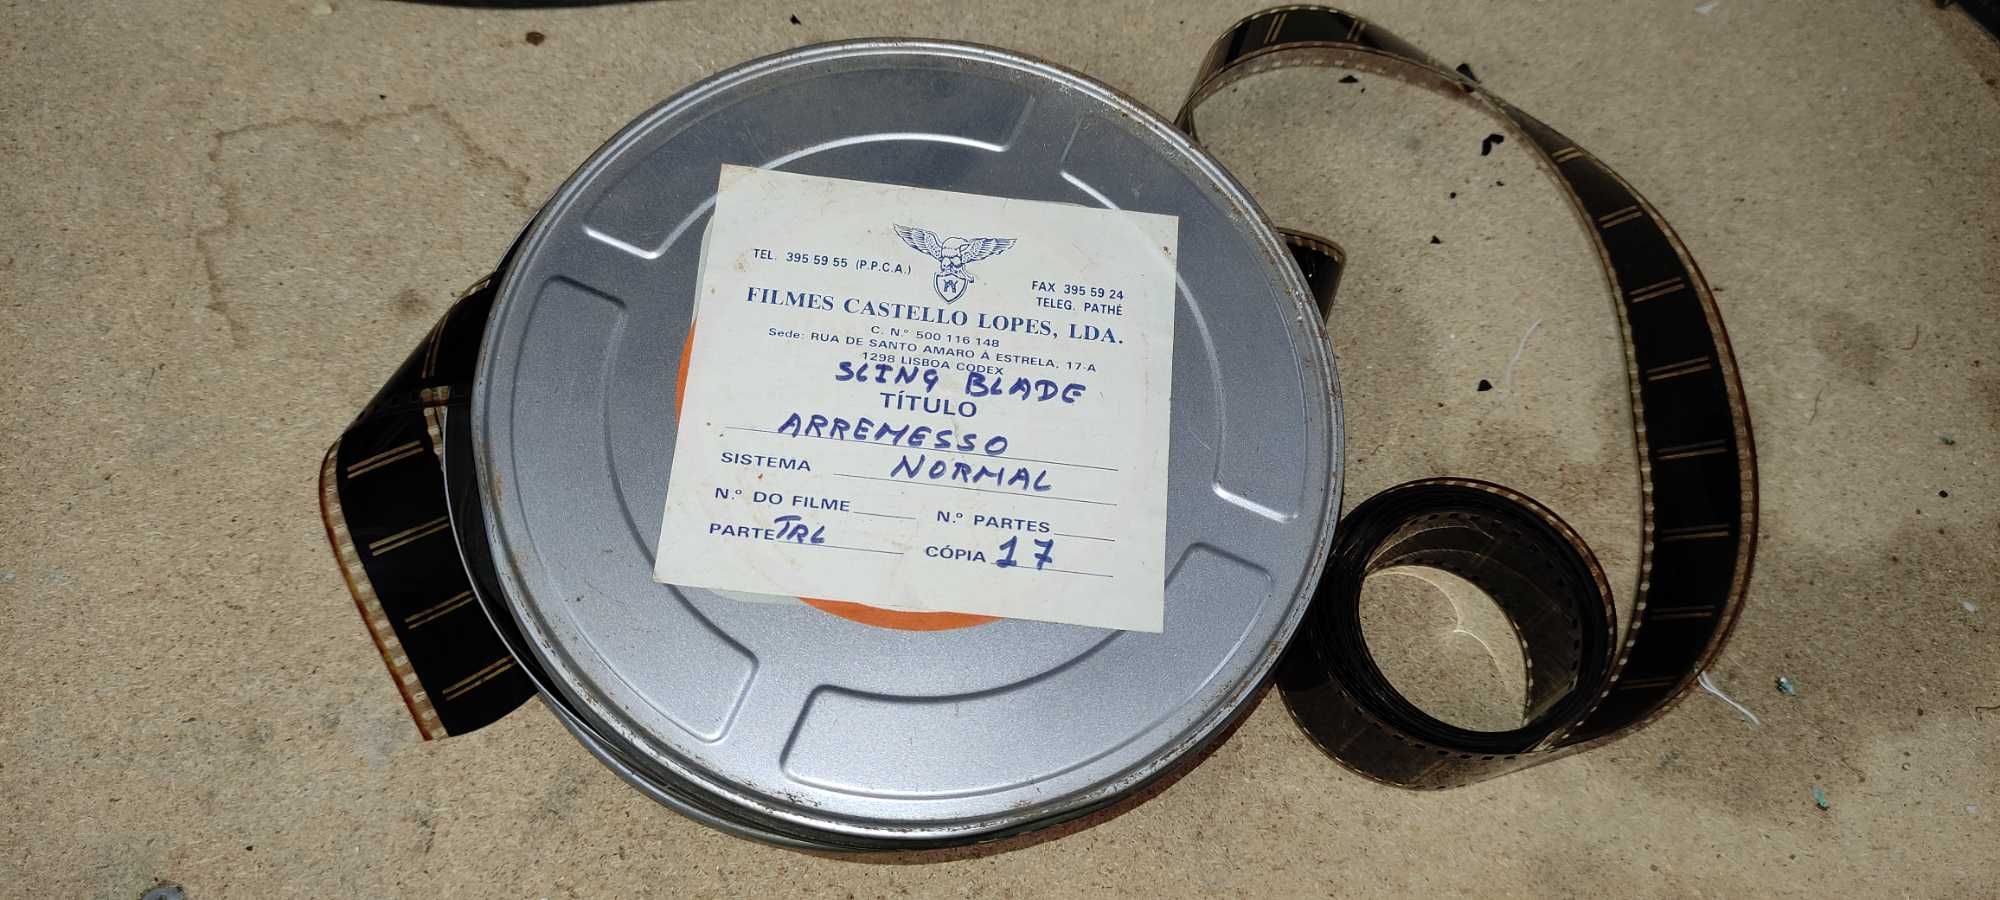 Caixas de Filmes Antigos 35mm